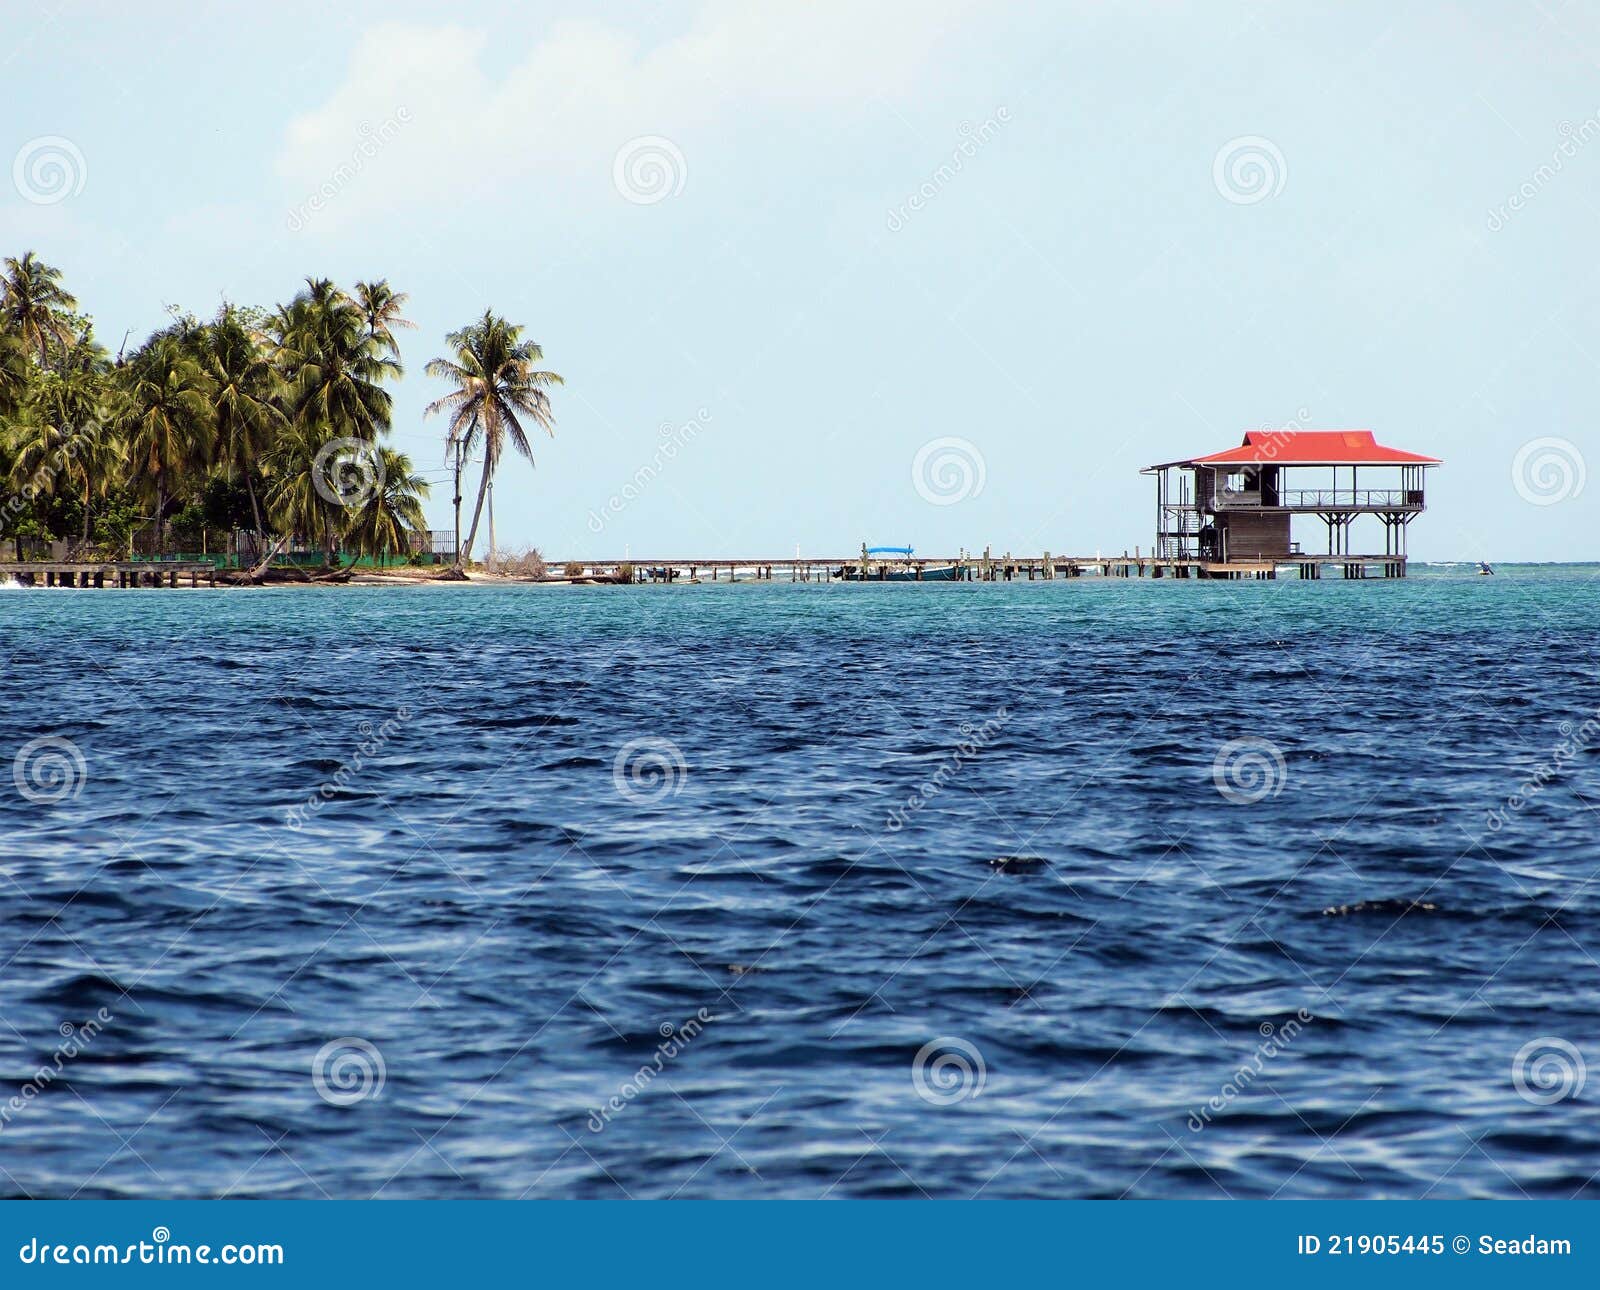 Tropical stilt restaurant stock image. Image of pier - 21905445